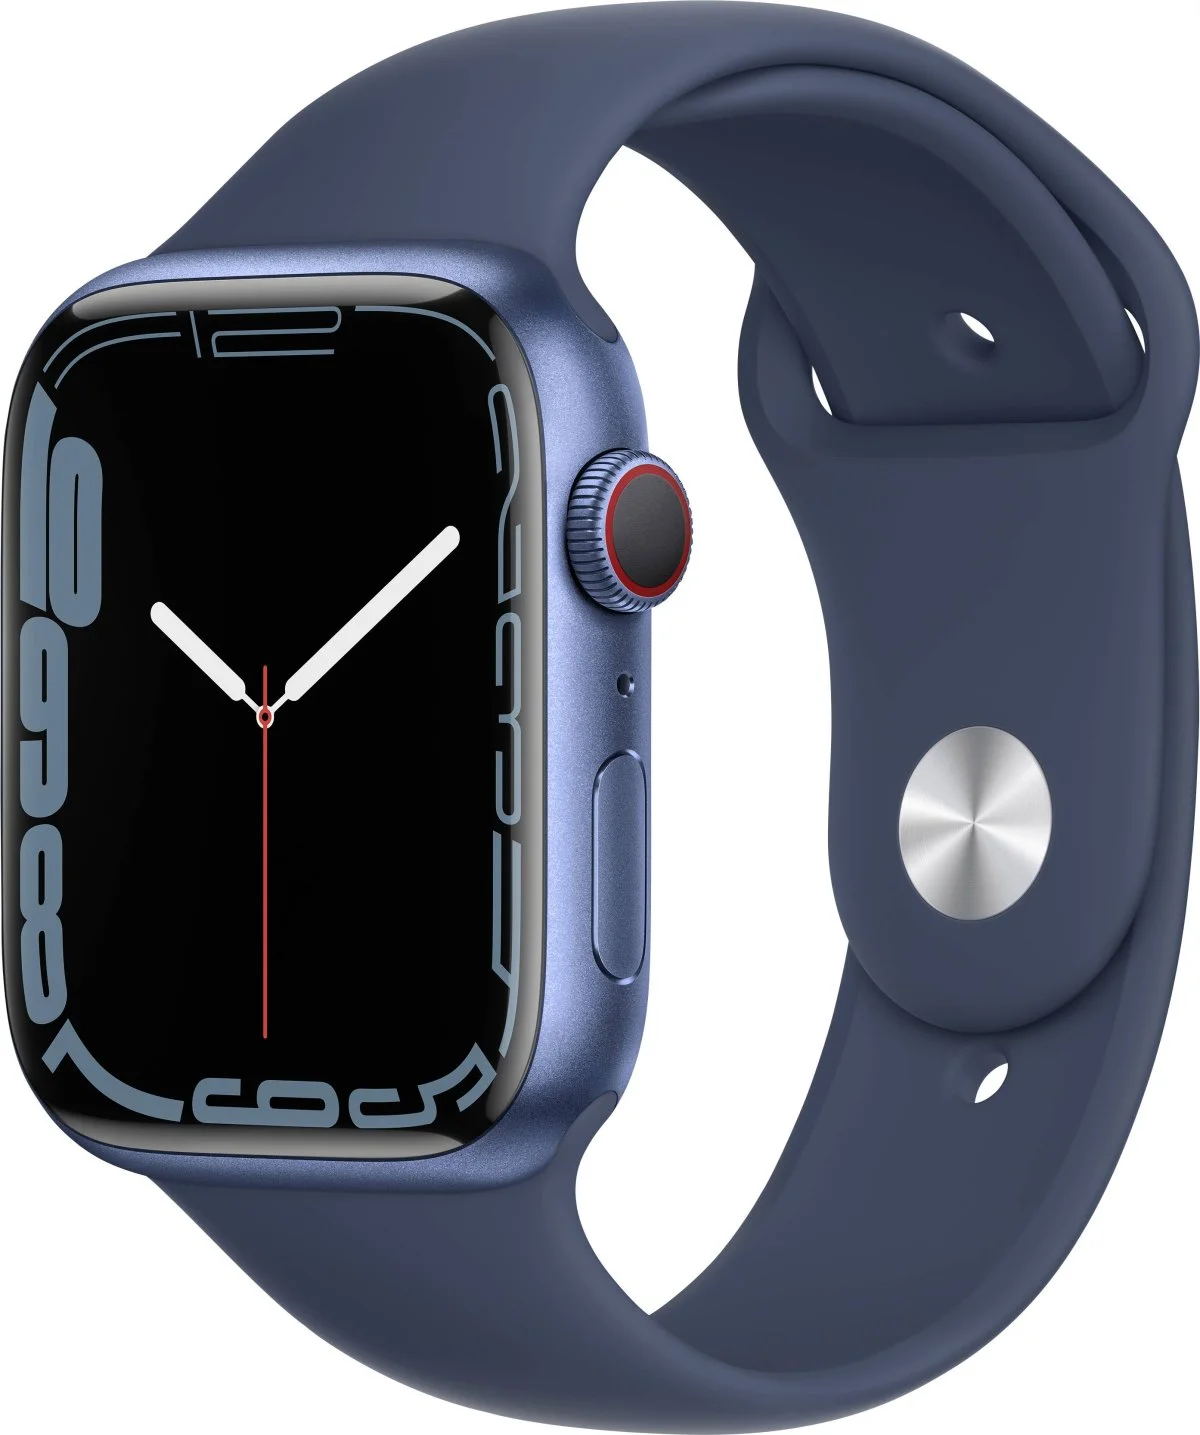 Řemínek iMore SmoothBand pro Apple Watch Series 1/2/3 (38mm) - Hlubokomořsky modrý